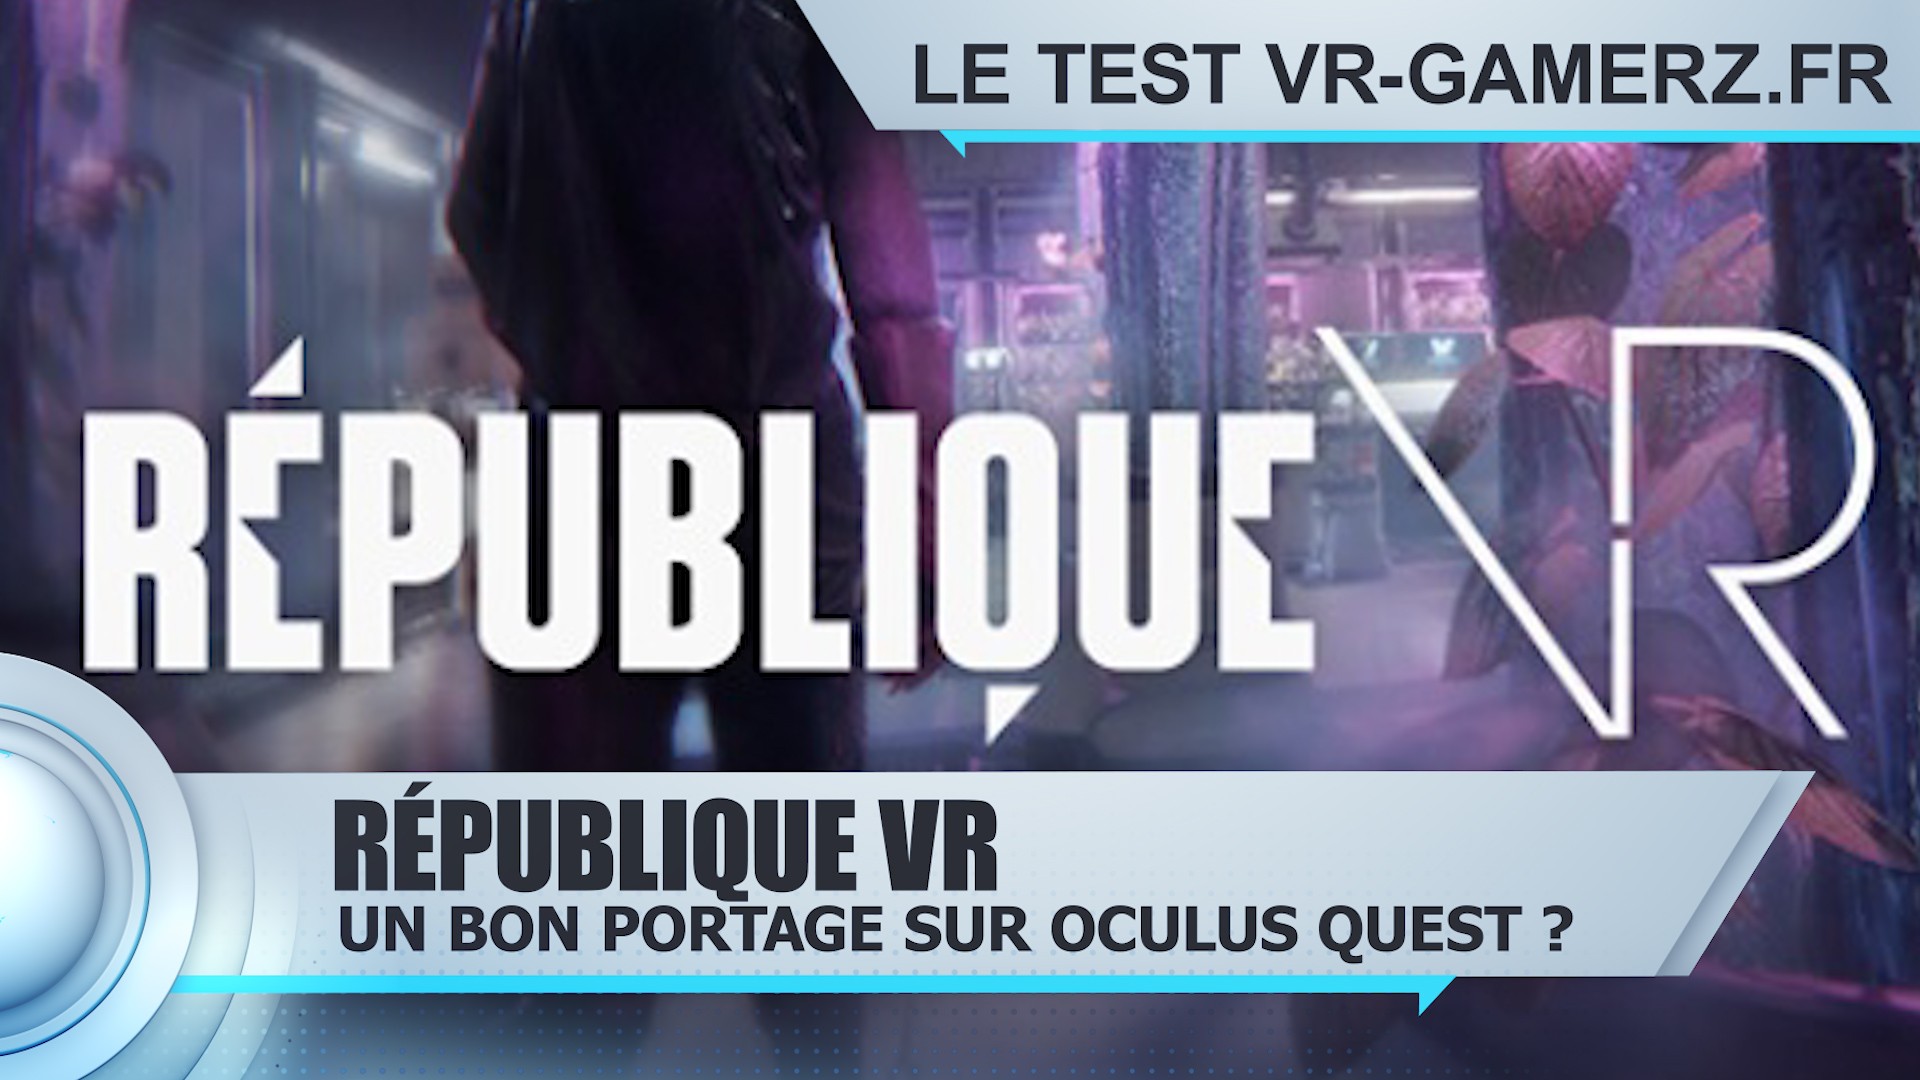 Test République VR Oculus quest